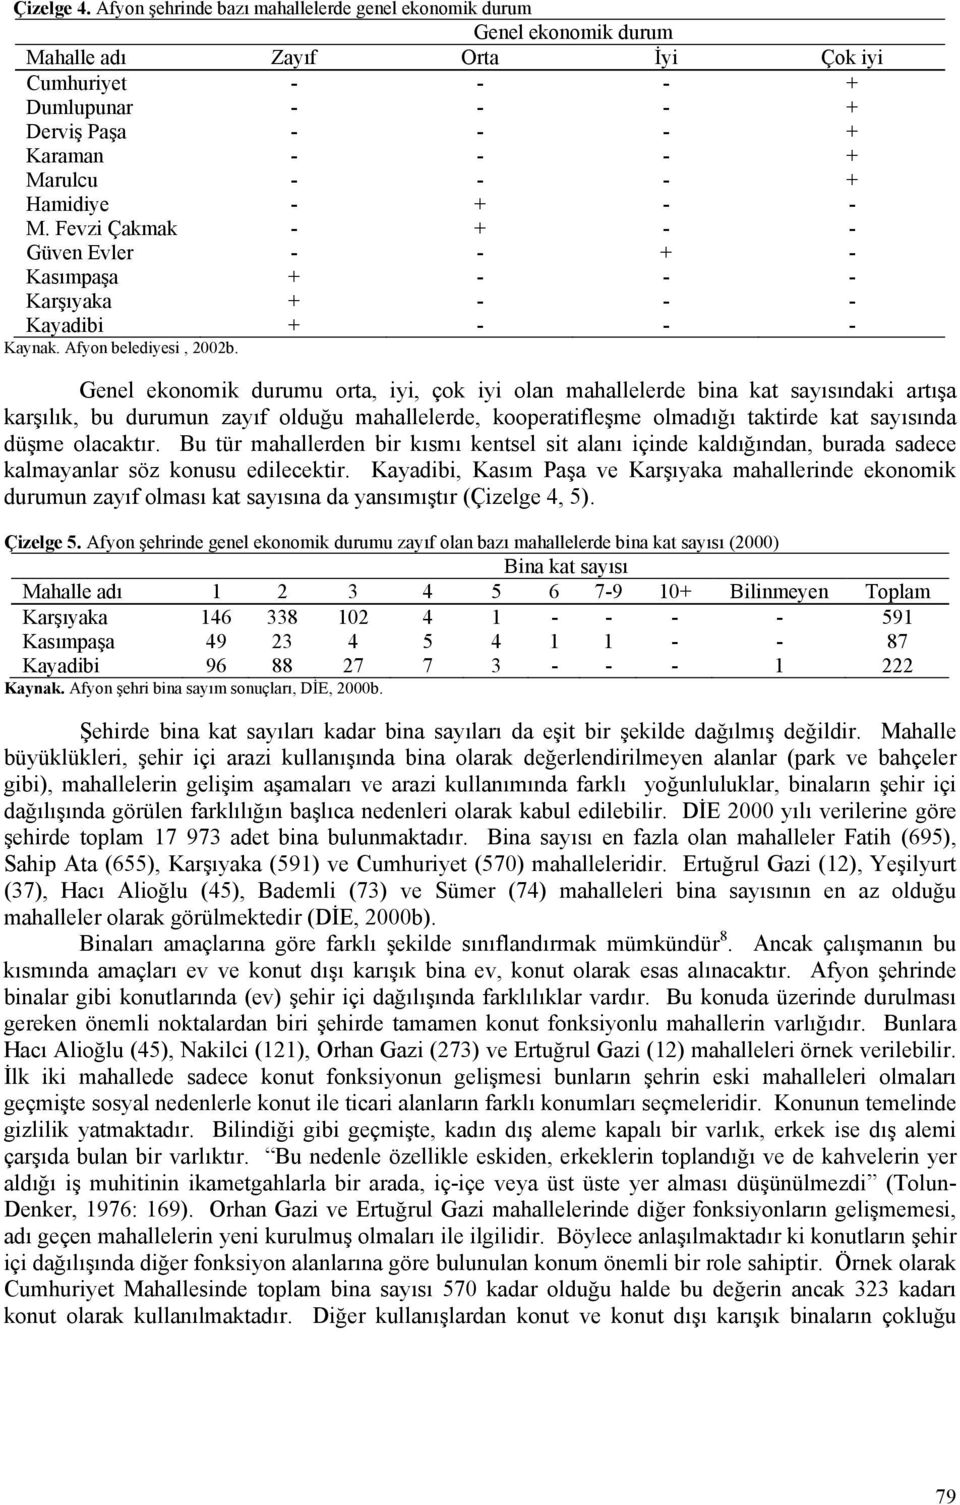 Hamidiye - + - - M. Fevzi Çakmak - + - - Güven Evler - - + - Kasımpaşa + - - - Karşıyaka + - - - Kayadibi + - - - Kaynak. Afyon belediyesi, 2002b.